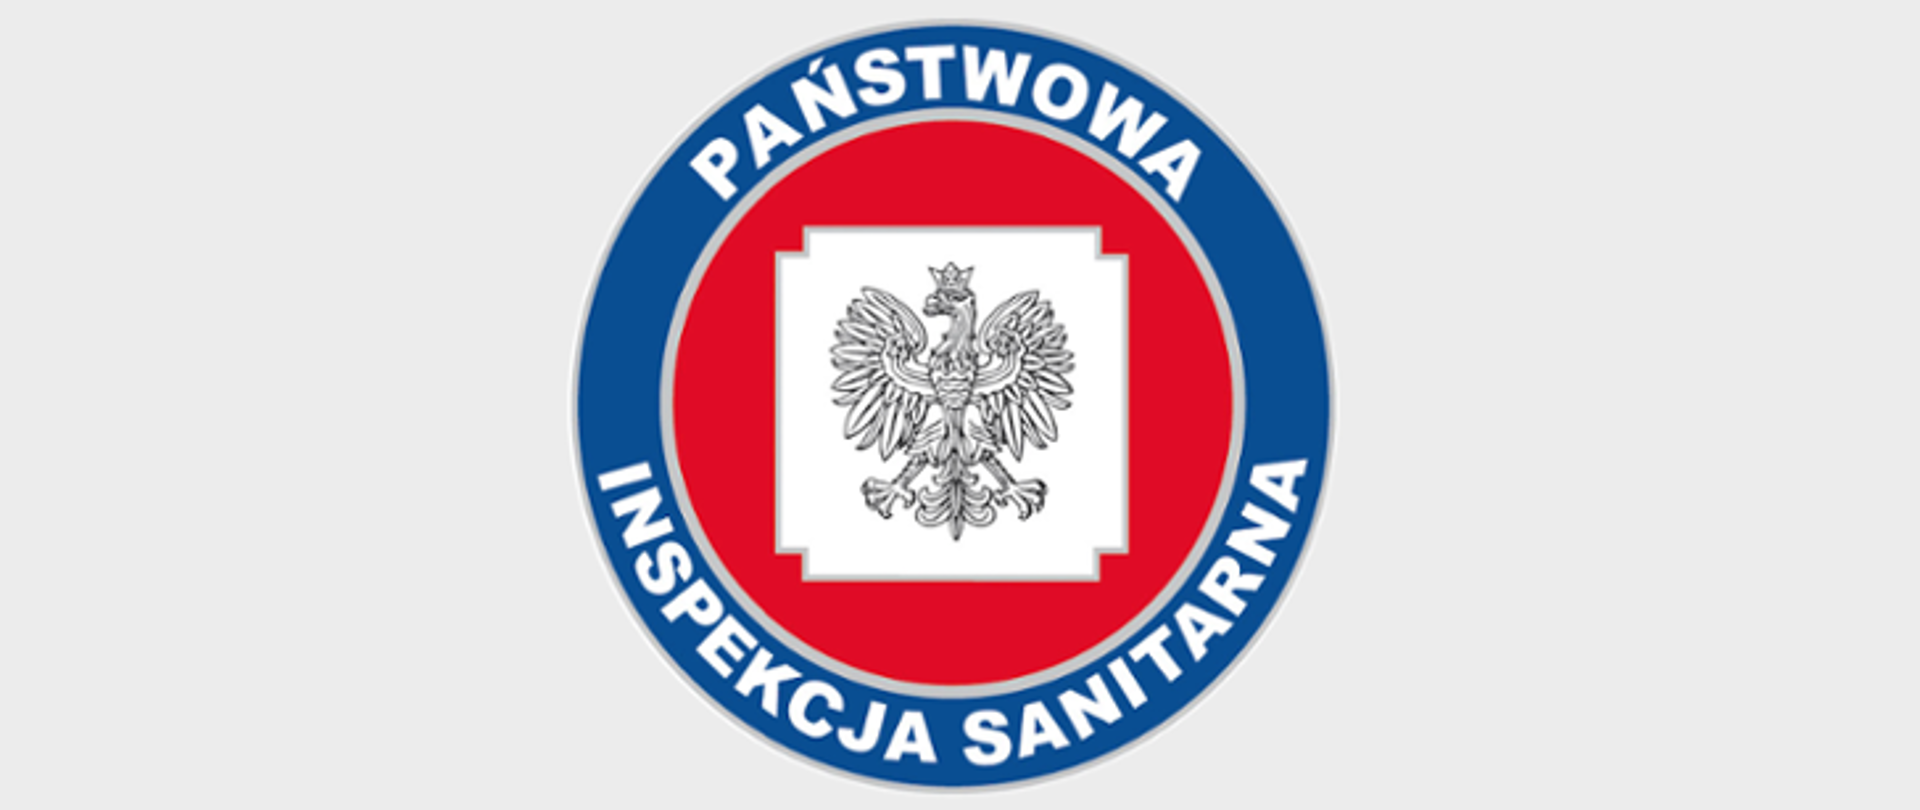 Obrazek przedstawia logo Państwowej Inspekcji Sanitarnej